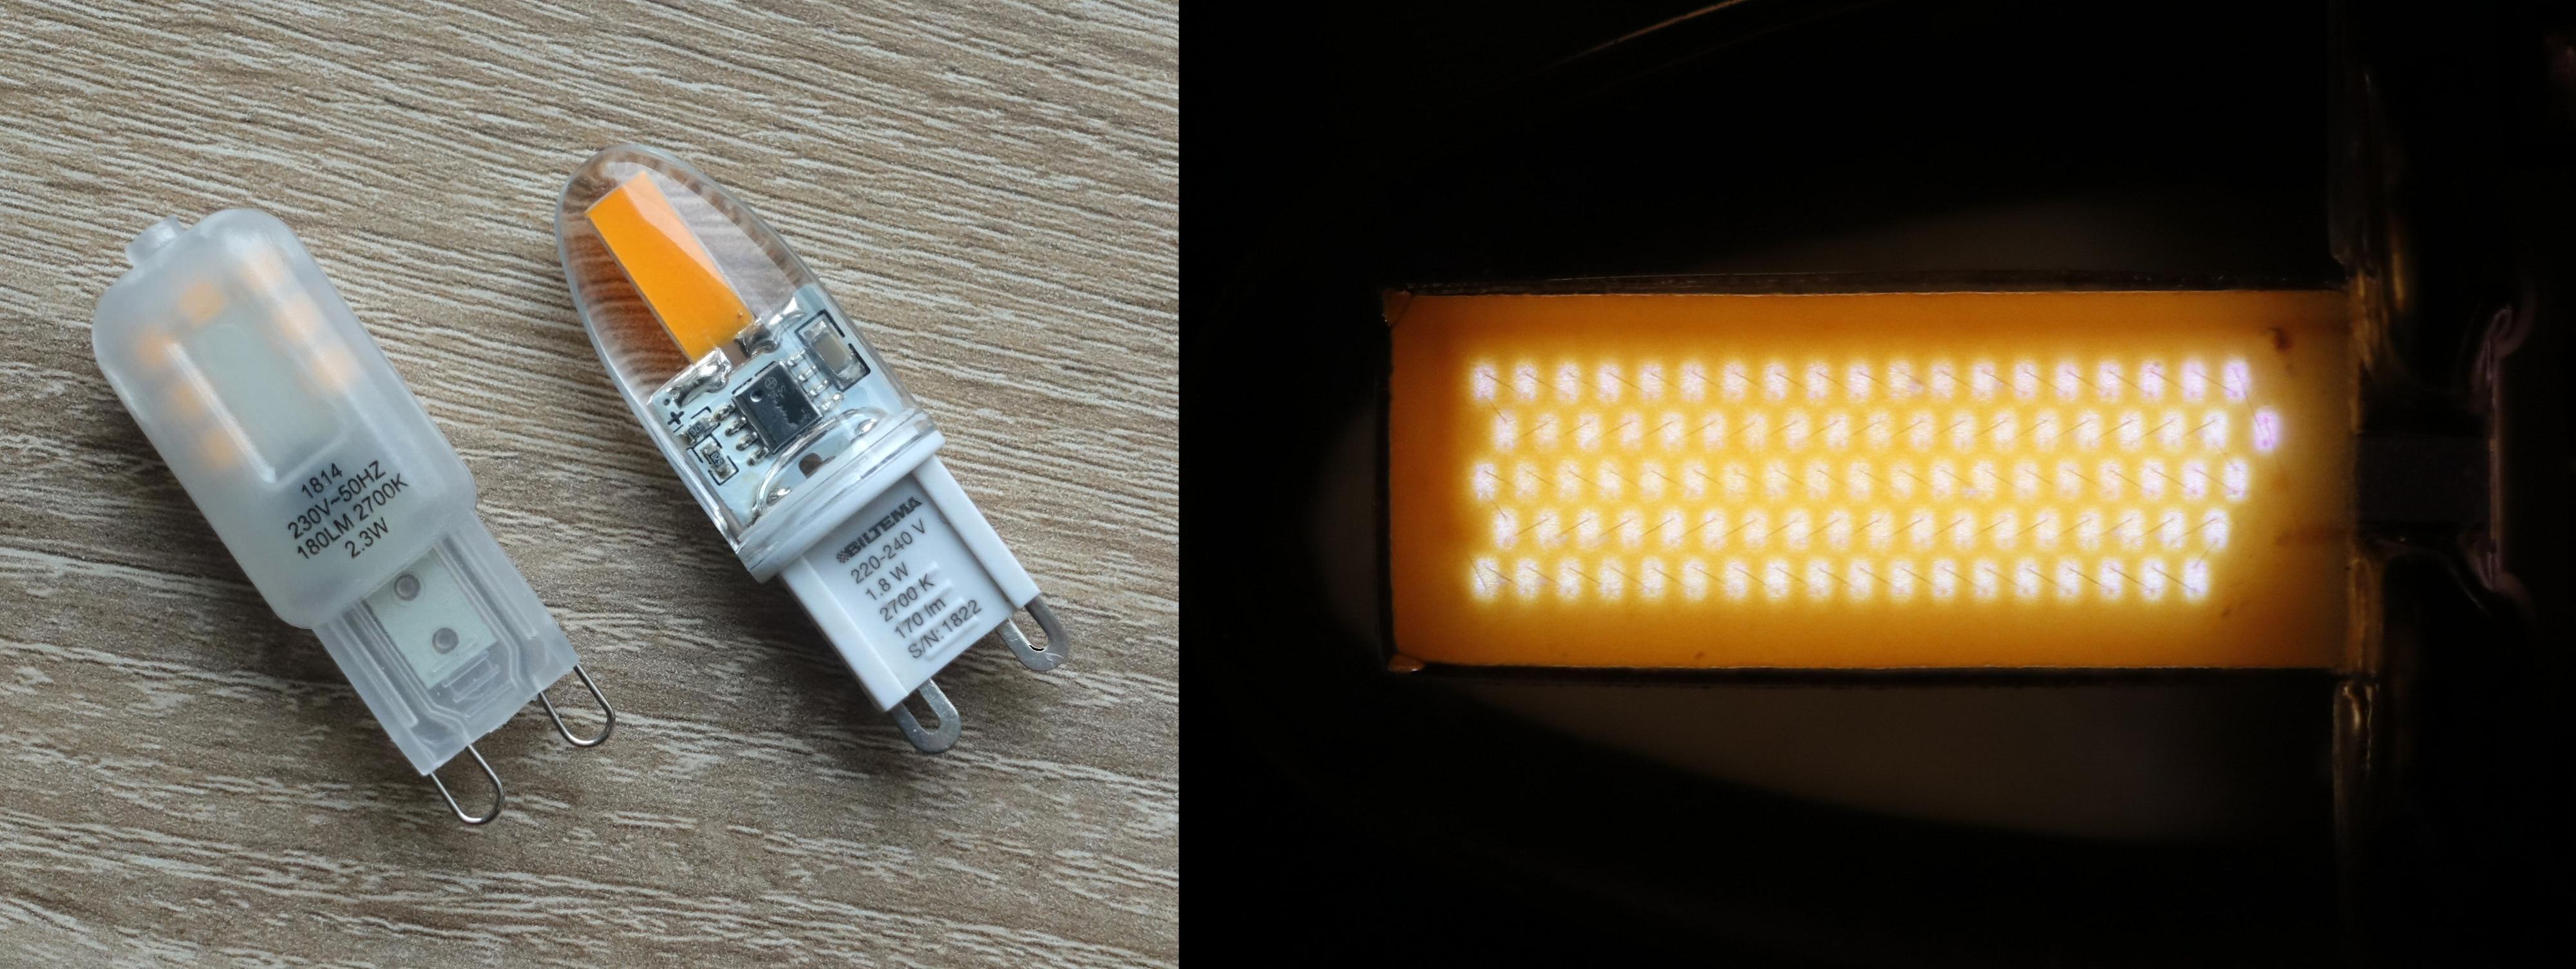 For G9-pæren med SMD-teknologi til venstre kan vi enkelt telle 7 LED-brikker under plastskallet. For pæren til høyre ser det først ut som den bare har et stort «LED-felt», men dette er faktisk en lang serie med små dioder lagd med COG-teknologi. I makrobildet til høyre kan vi både telle dem og se at de har forbindelse med hverandre.